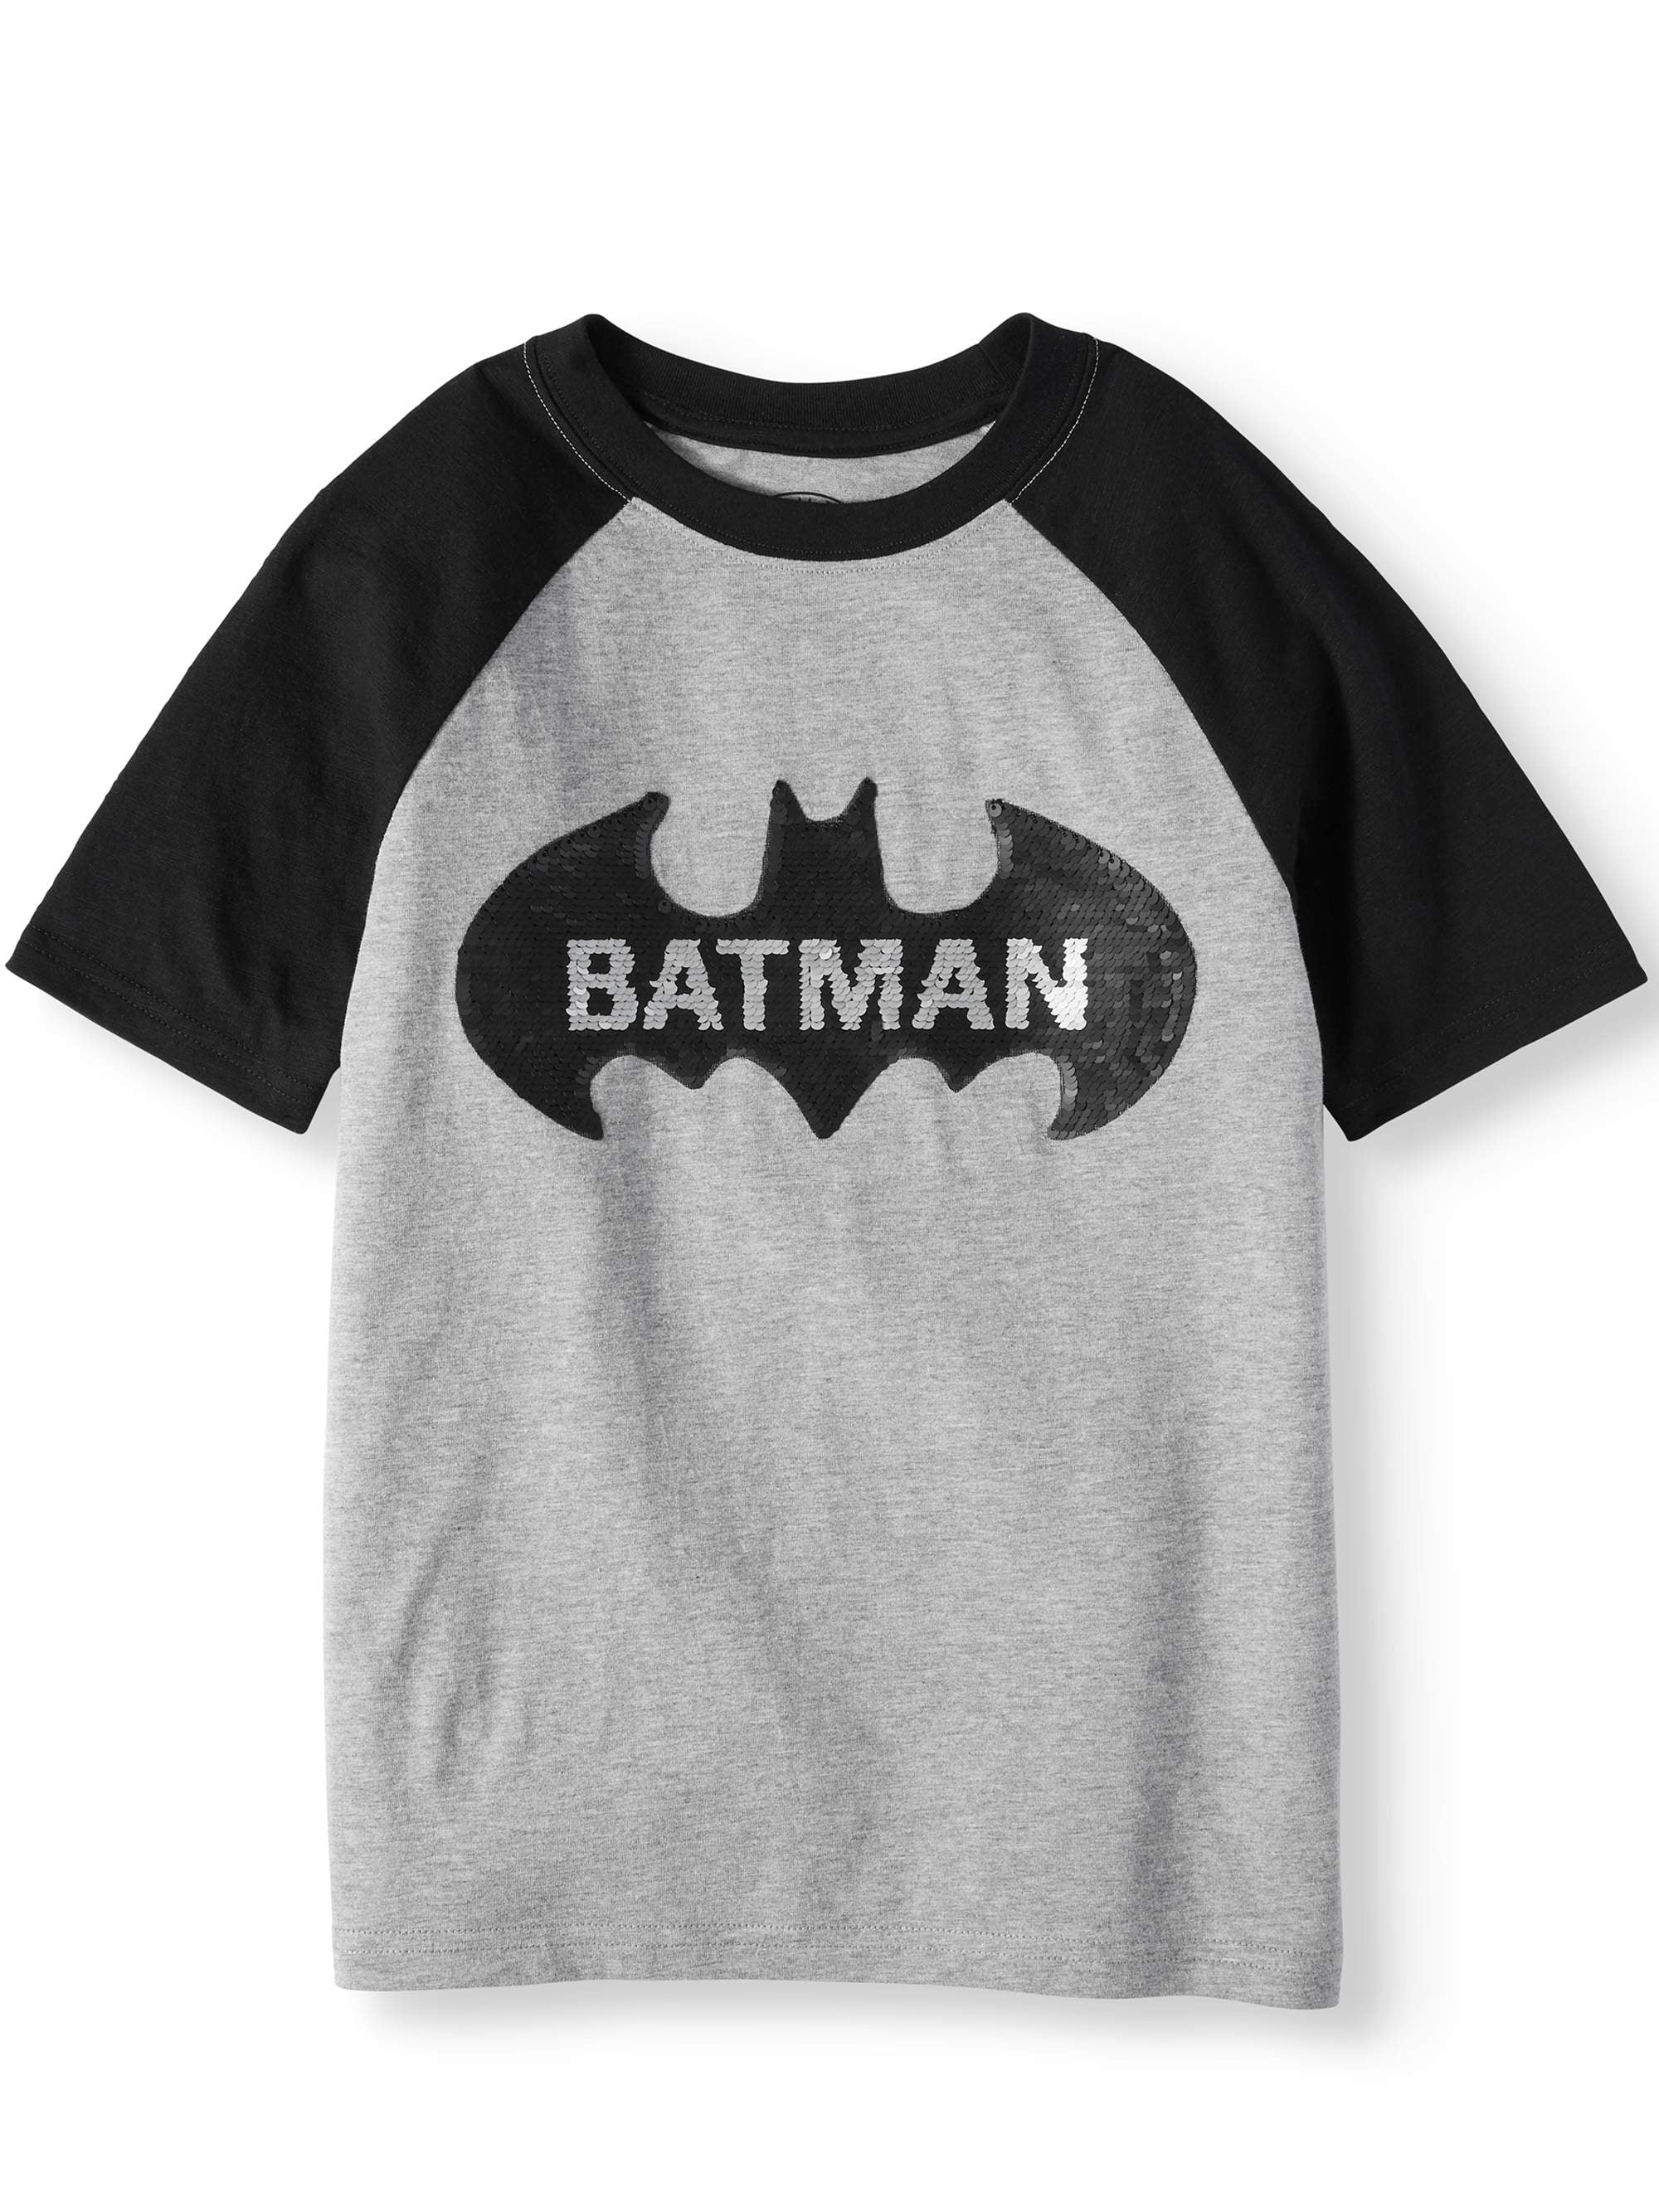 Toddler Boys Gray Stylish Batman Logo Superhero T-Shirt 